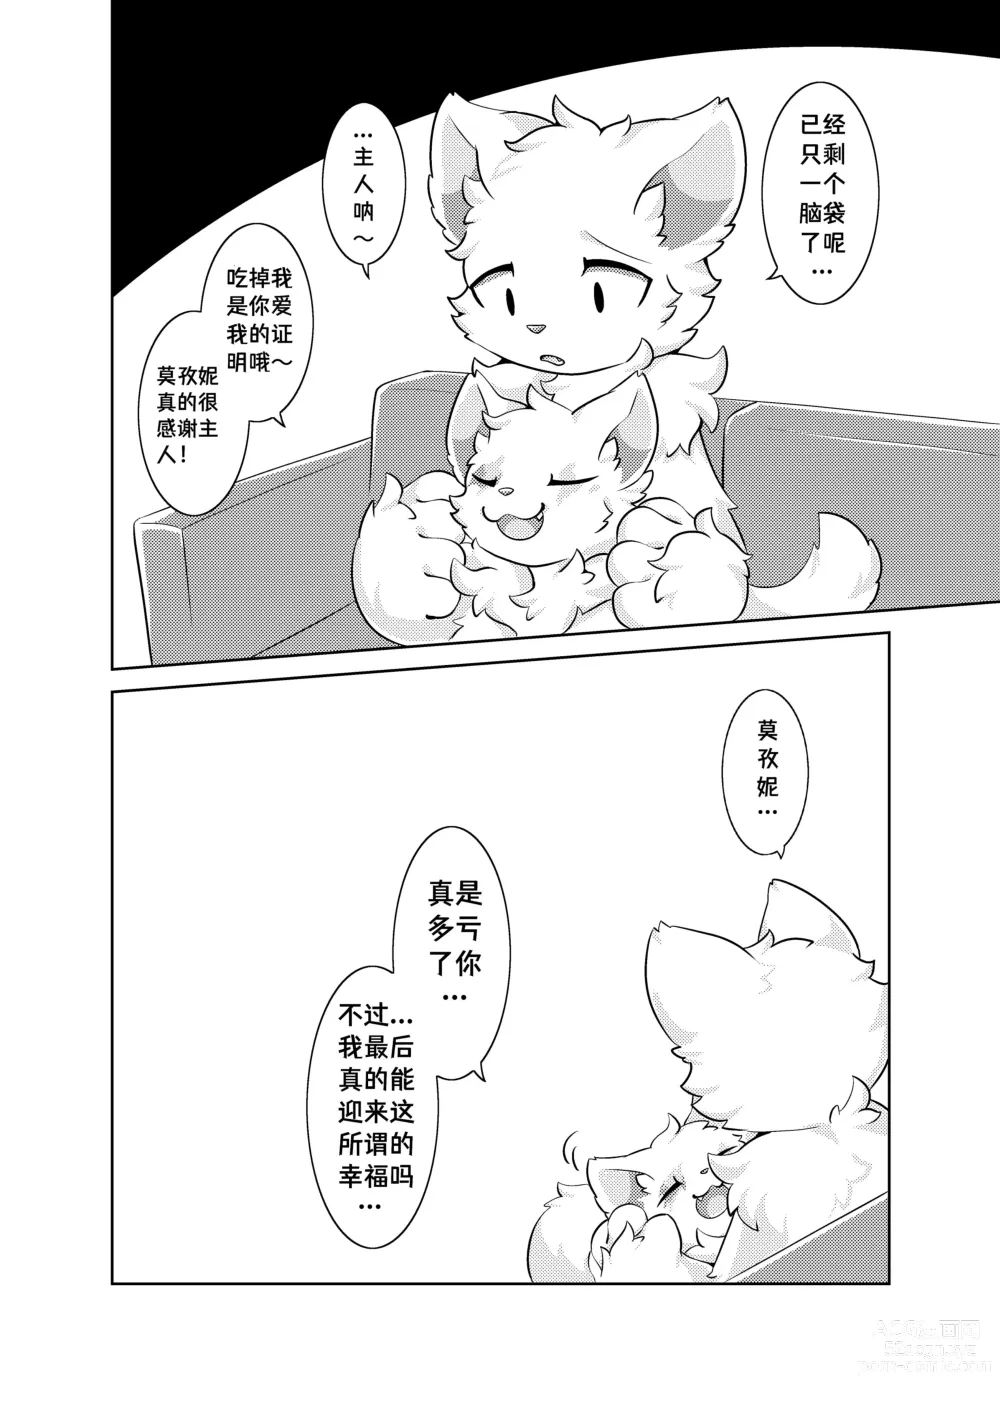 Page 40 of doujinshi Bokuyo motsuni no oishii seikatu.R-18G